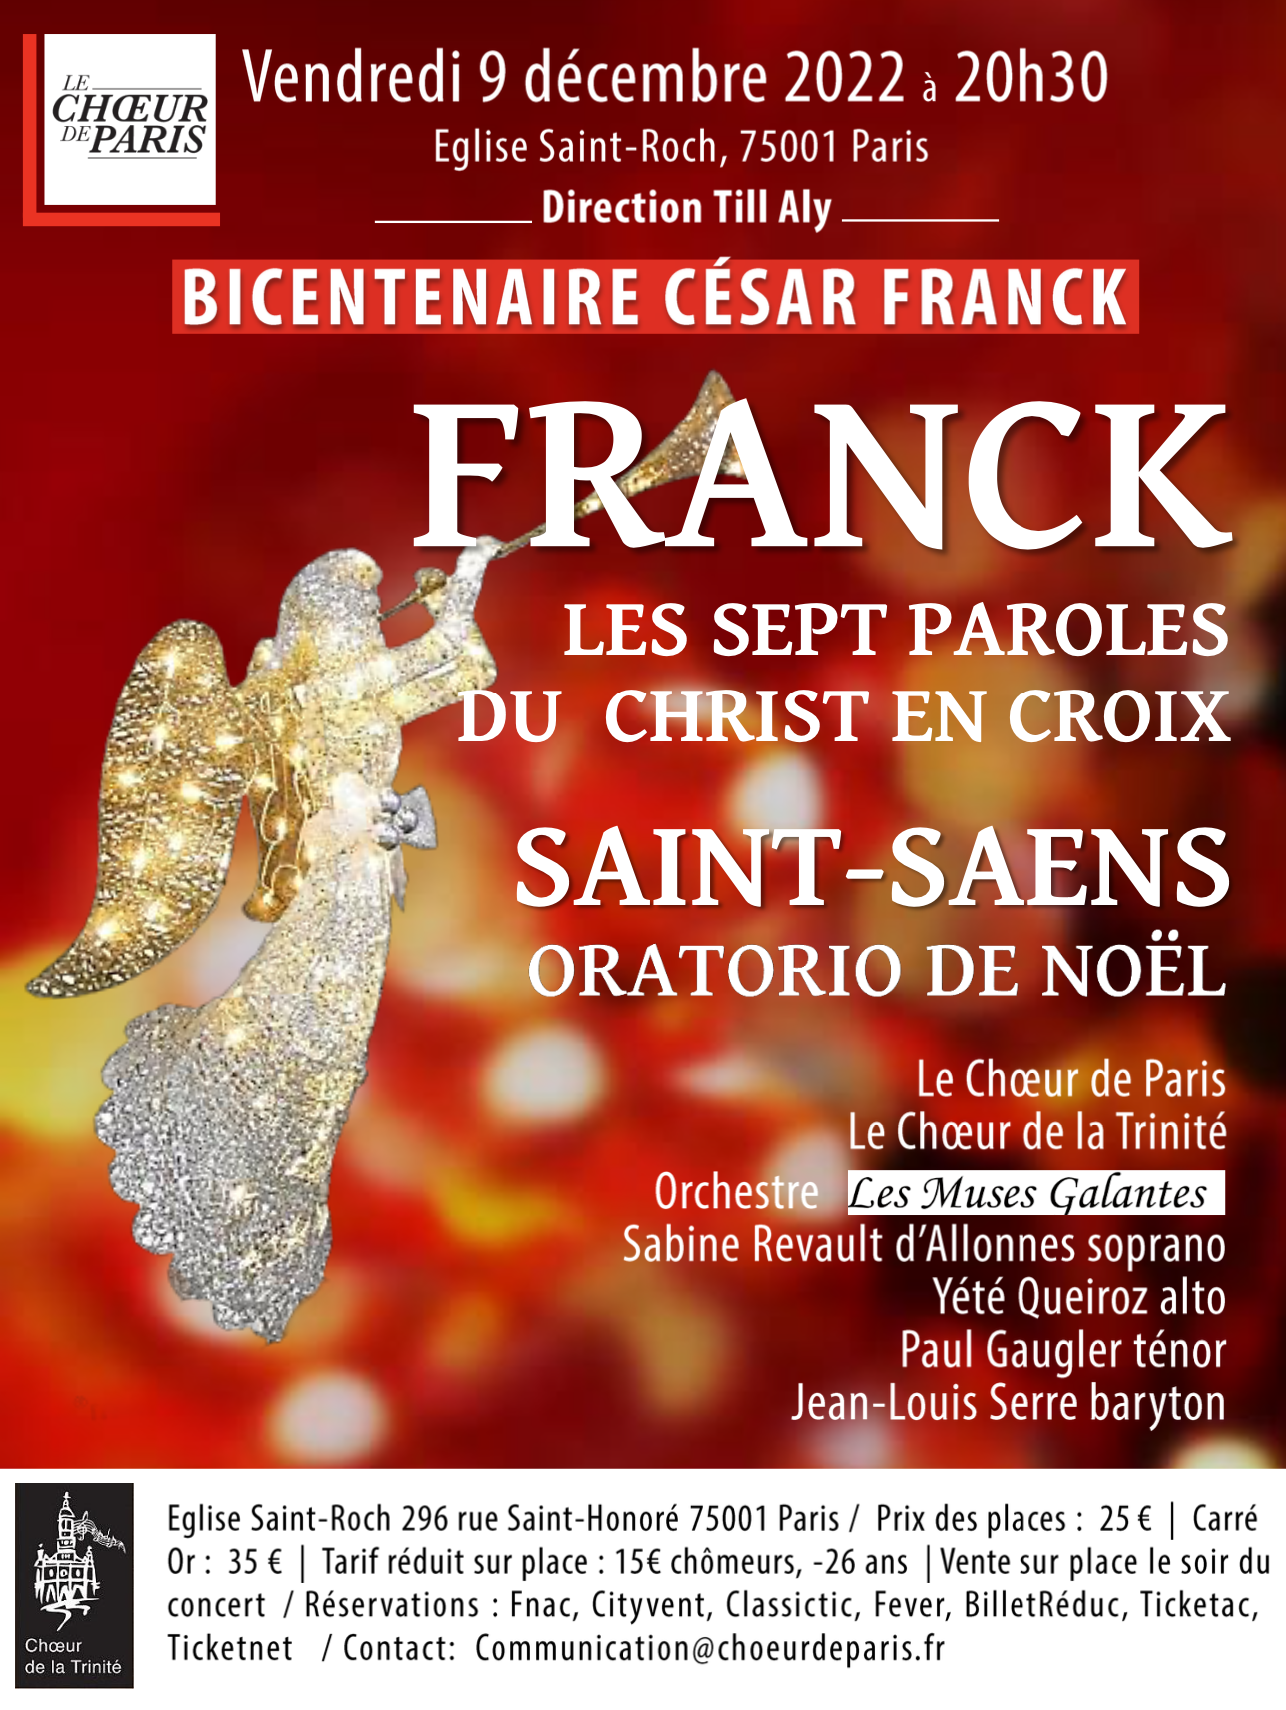 Bicentenaire César Franck